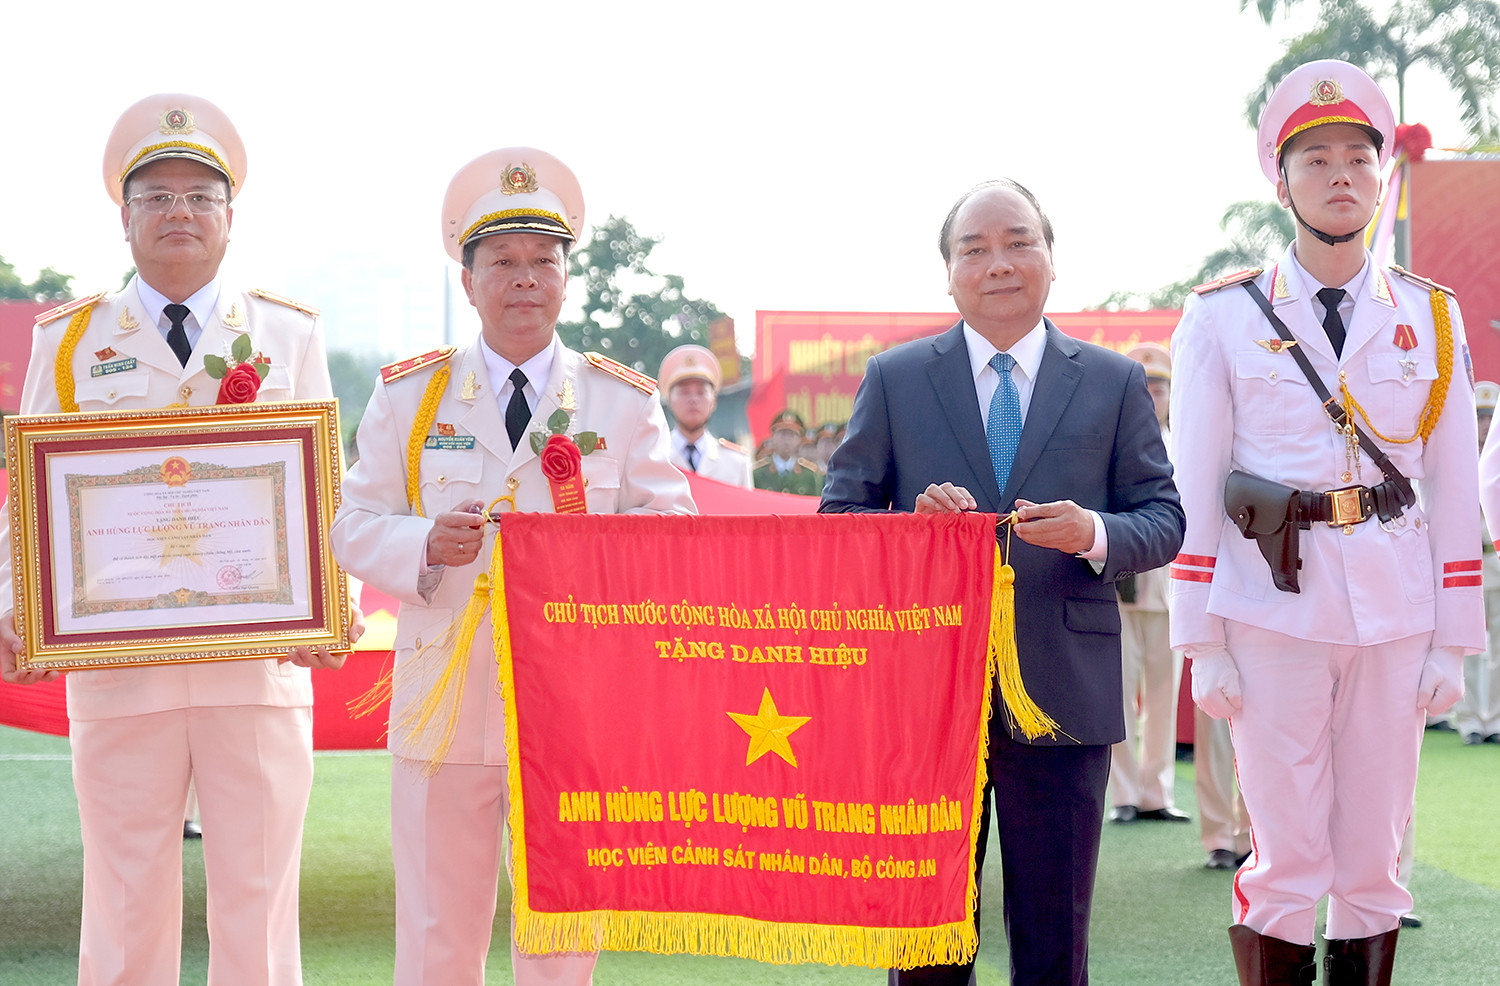 Thủ tướng Nguyễn Xuân Phúc dự lễ kỷ niệm 50 năm ngày thành lập Học viện Cảnh sát nhân dân